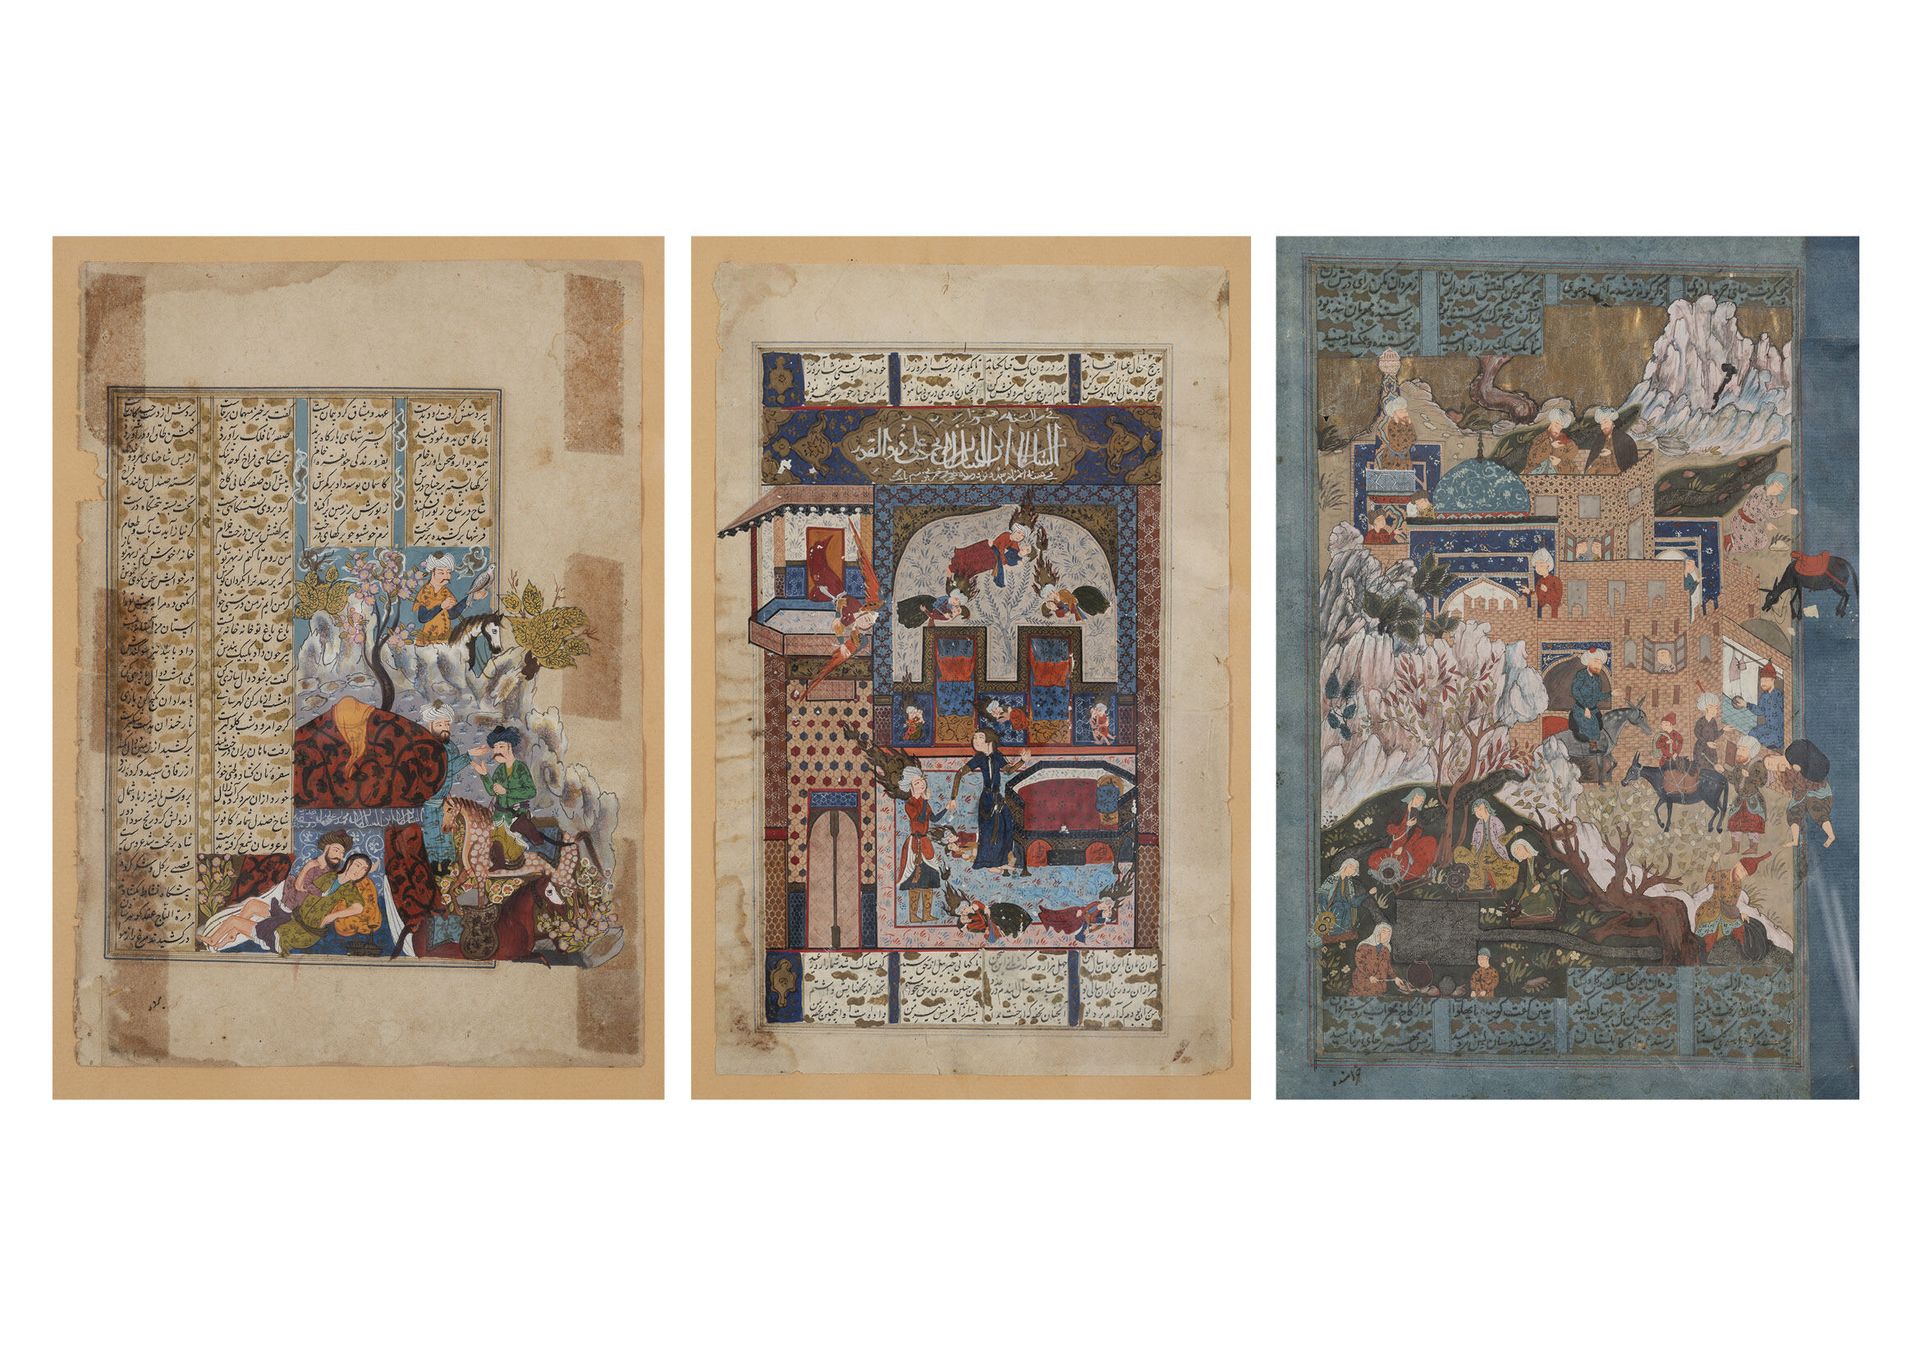 Iran, XIXème siècle 带着猎鹰的骑手和拥抱的夫妇。

宫殿前的热闹场景。

预言家的生活场景。

三张水粉画手稿页，有些是镀金的。

26 x&hellip;